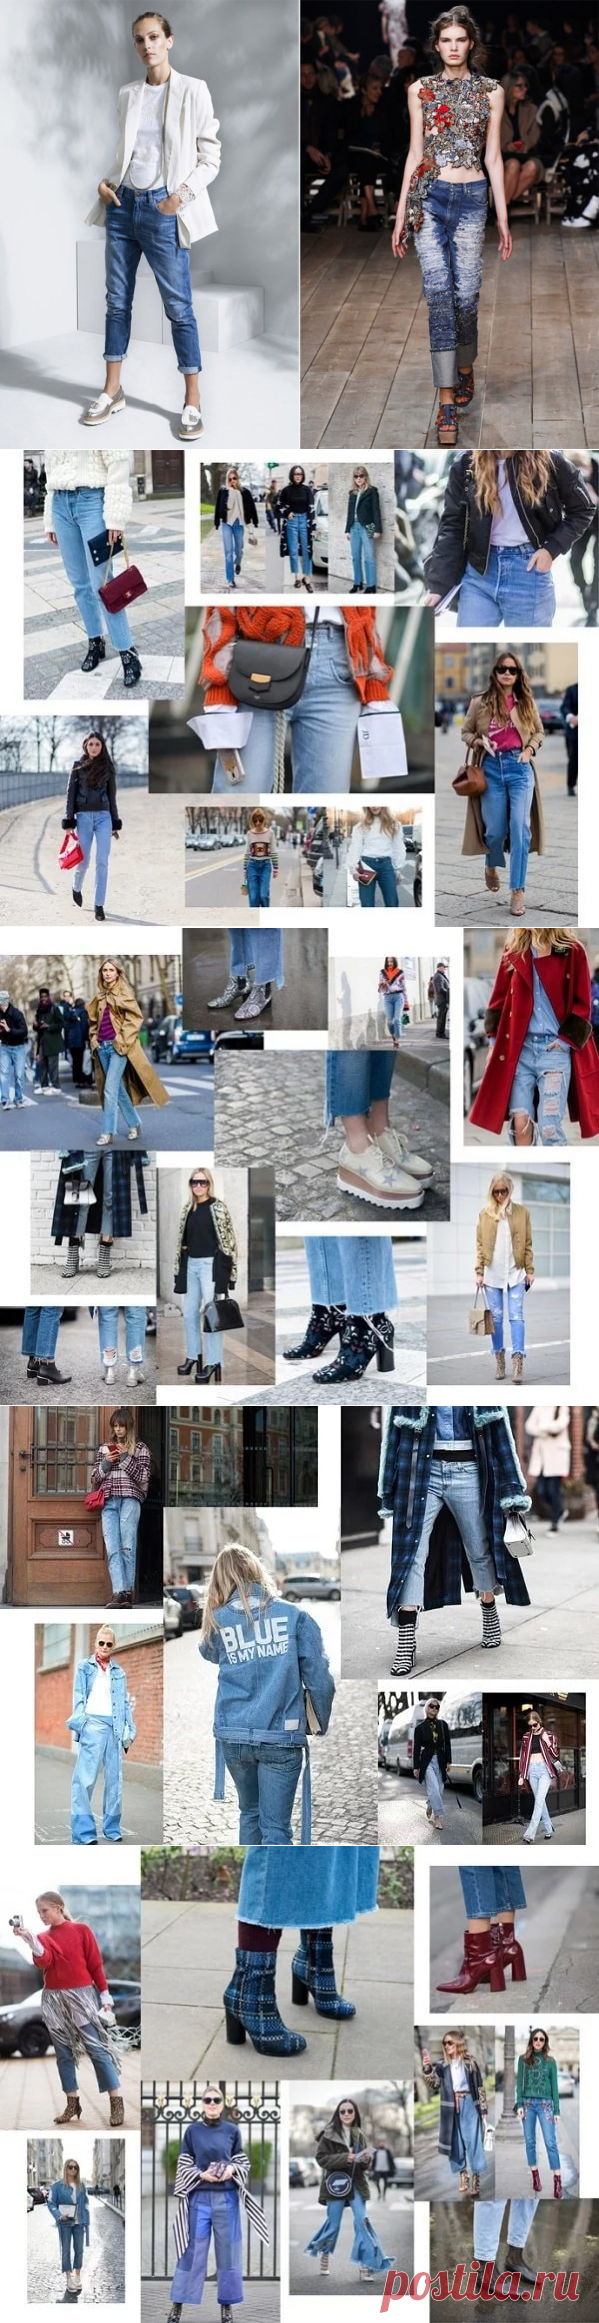 Какой фасон джинсов будет модным в этом году?